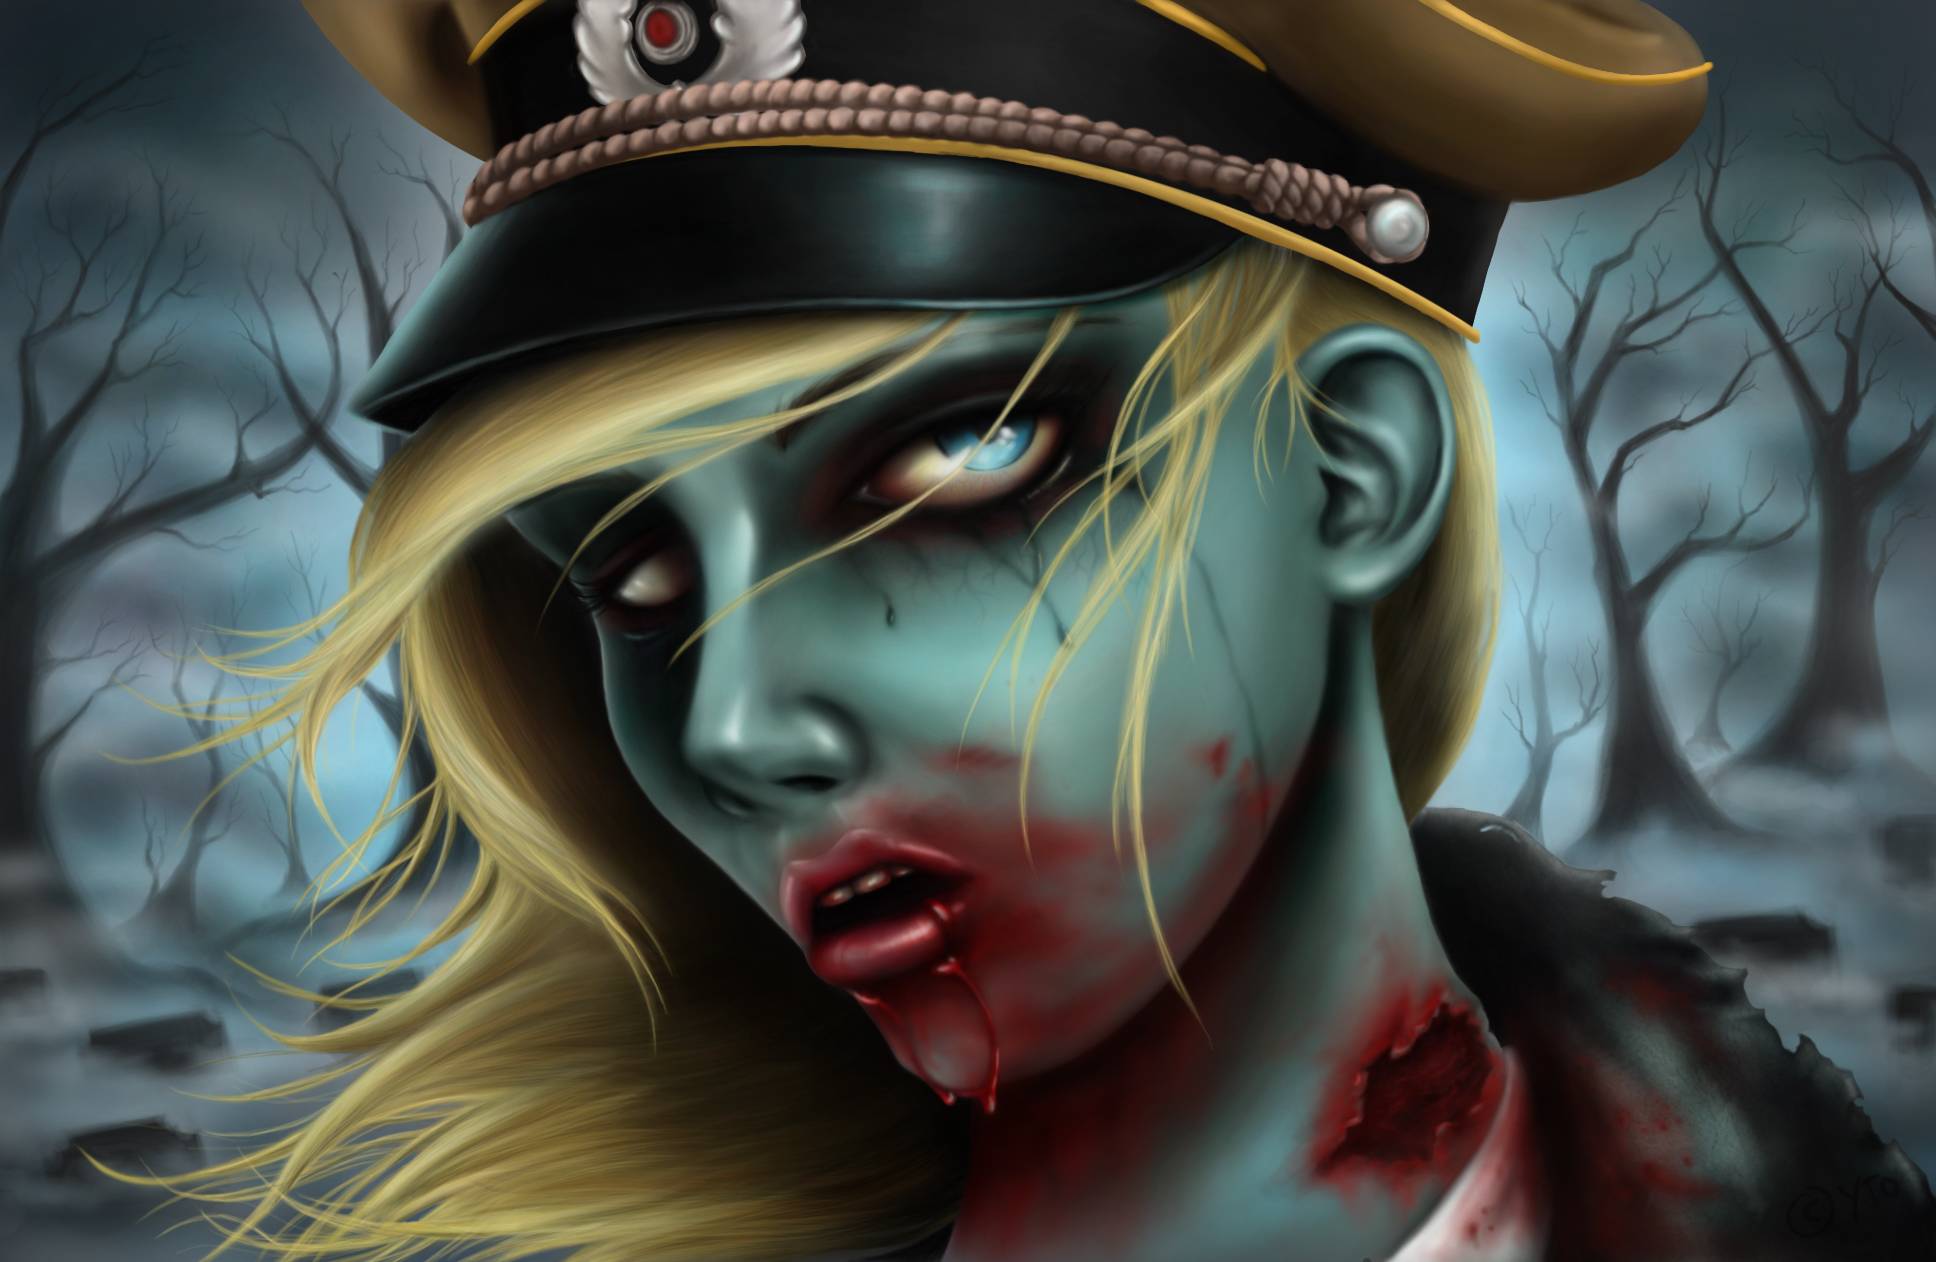 Hintergrundbilder handy nackte zombie girls army